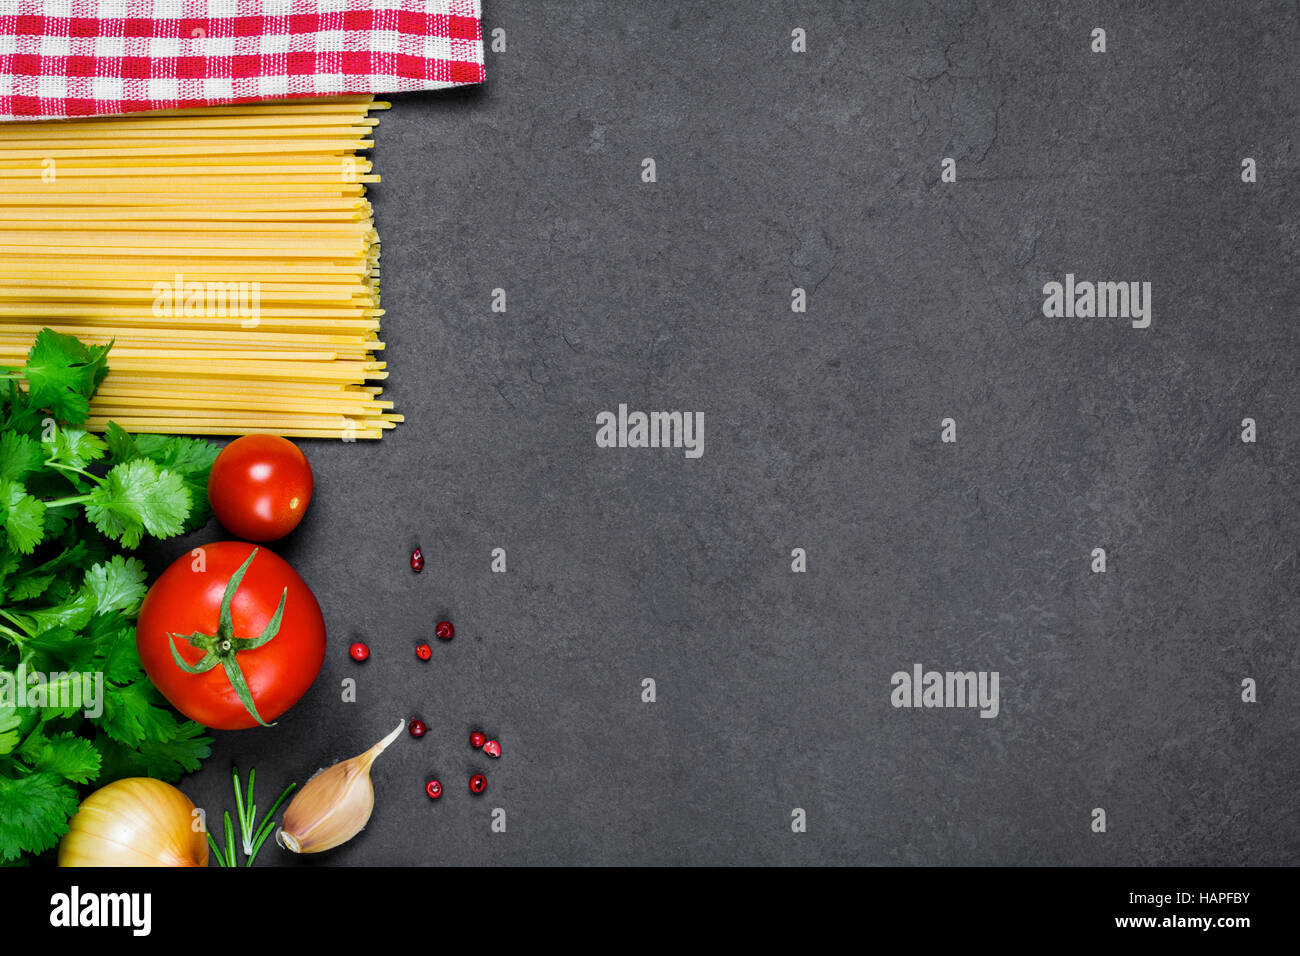 Cottura ingredienti per la cucina italiana: pasta spaghetti, i pomodori, il prezzemolo, la cipolla, l'aglio, pepe rosso e plaid igienico Foto Stock